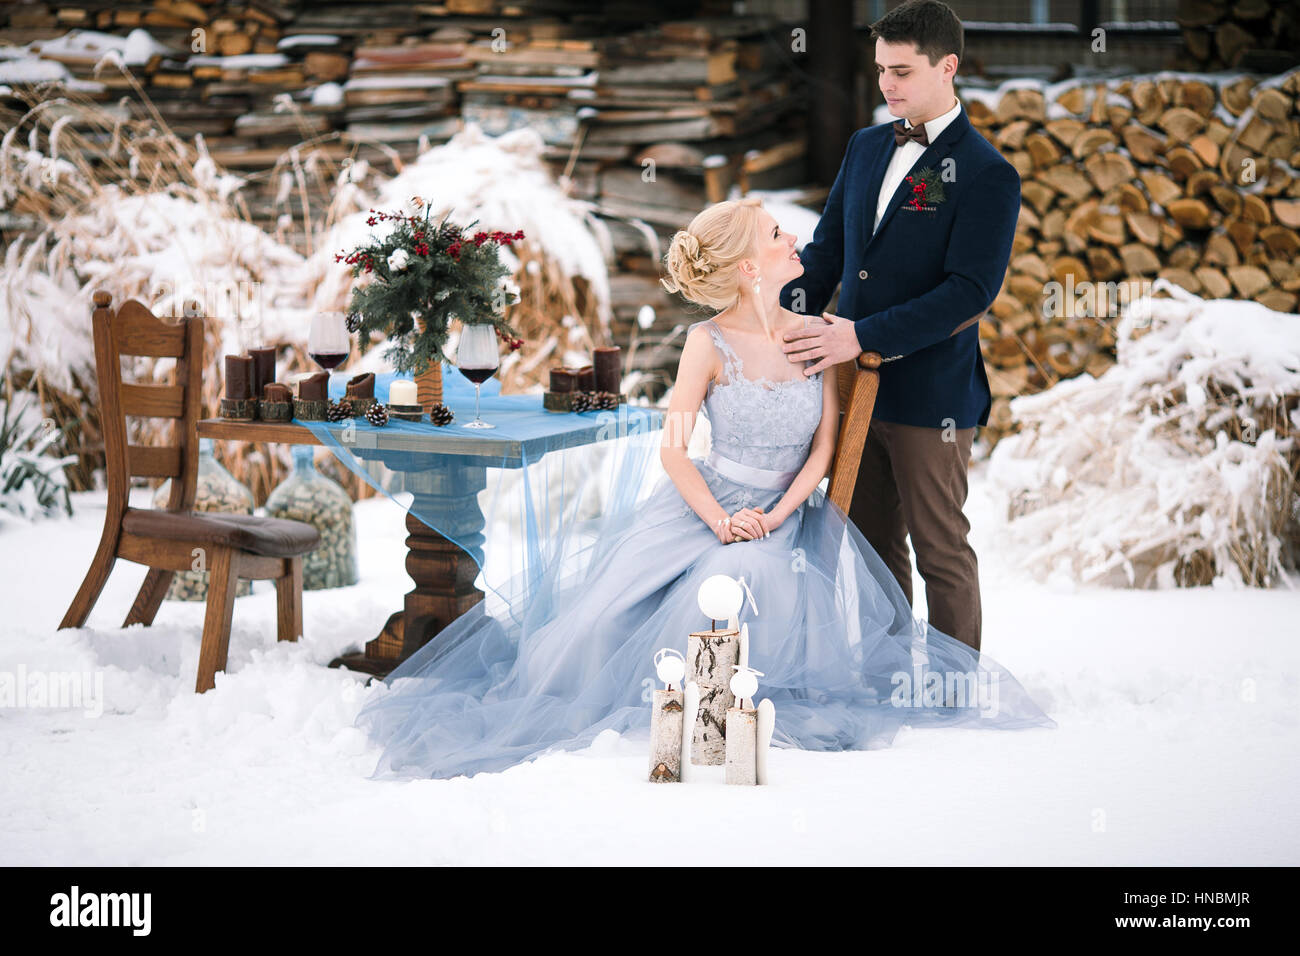 Mariage d'hiver sur la neige en plein air et le bois de l'arrière-plan. Mariée est assise, le marié se tient à proximité. À côté d'eux est le tableau avec des gobelets de vin et bouquet. Banque D'Images